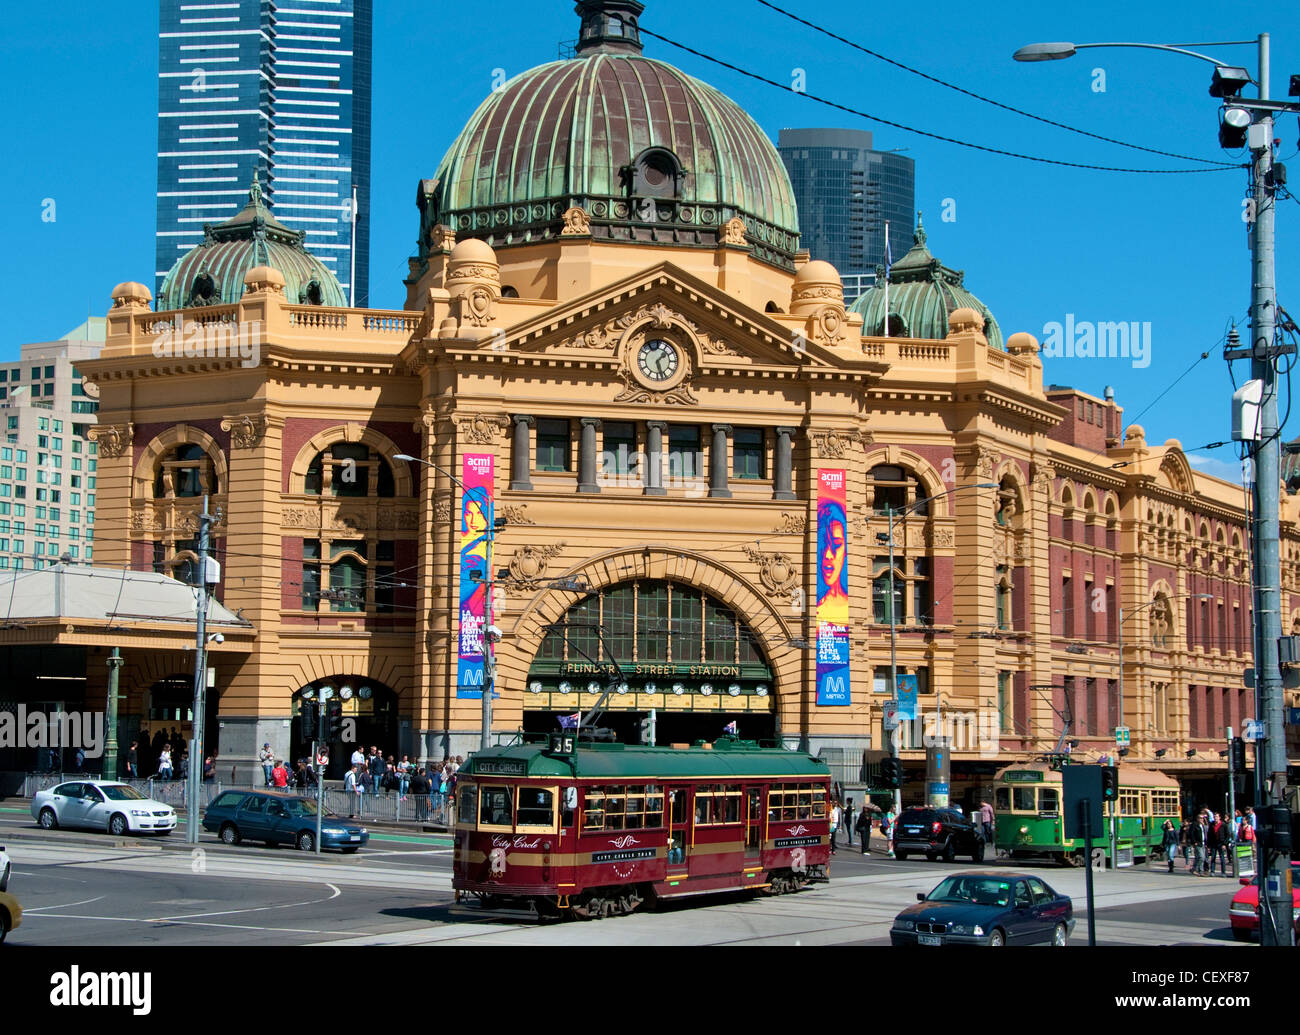 El tranvía circular de la ciudad pasando la estación de Flinders Street Melbourne Australia Foto de stock